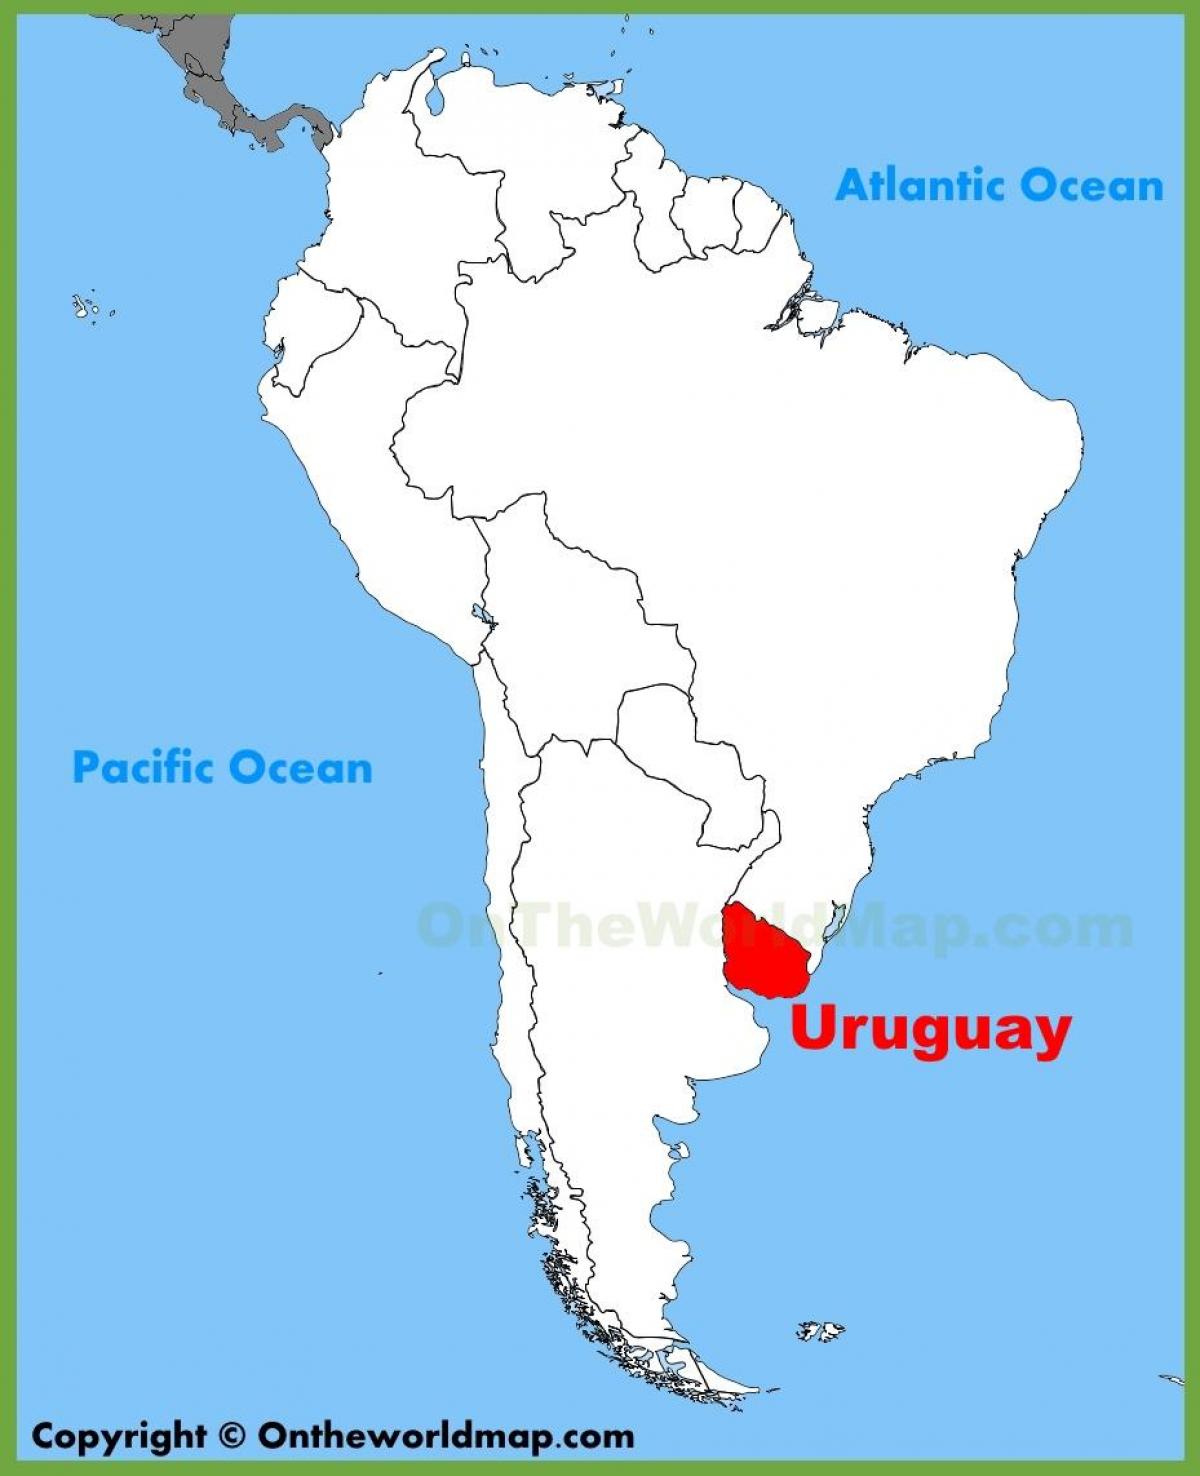 Kart over Uruguay sør-amerika